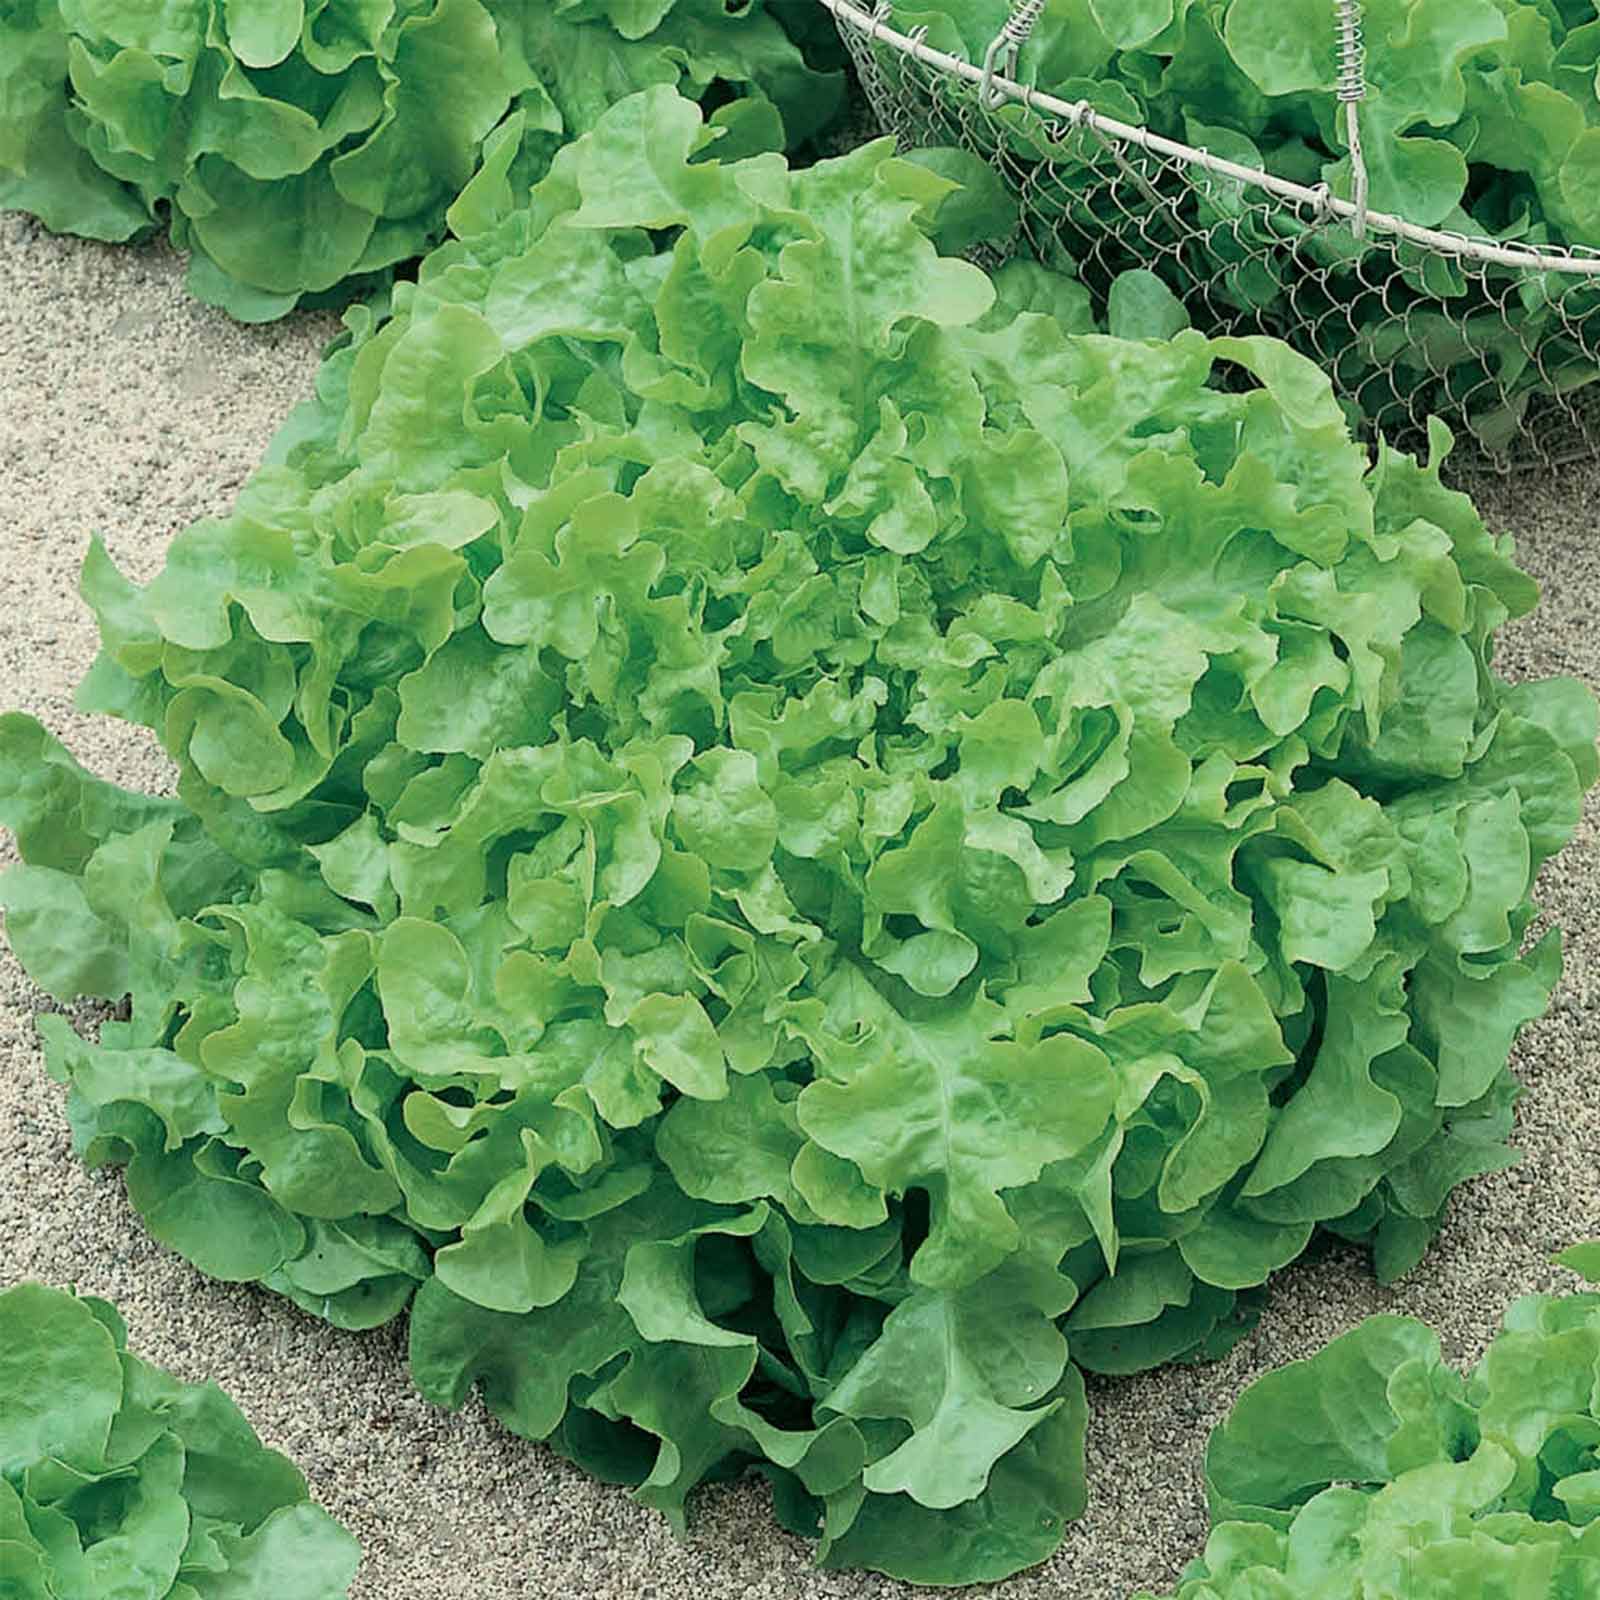 Листовой салат: польза и вред, как сохранить на зиму